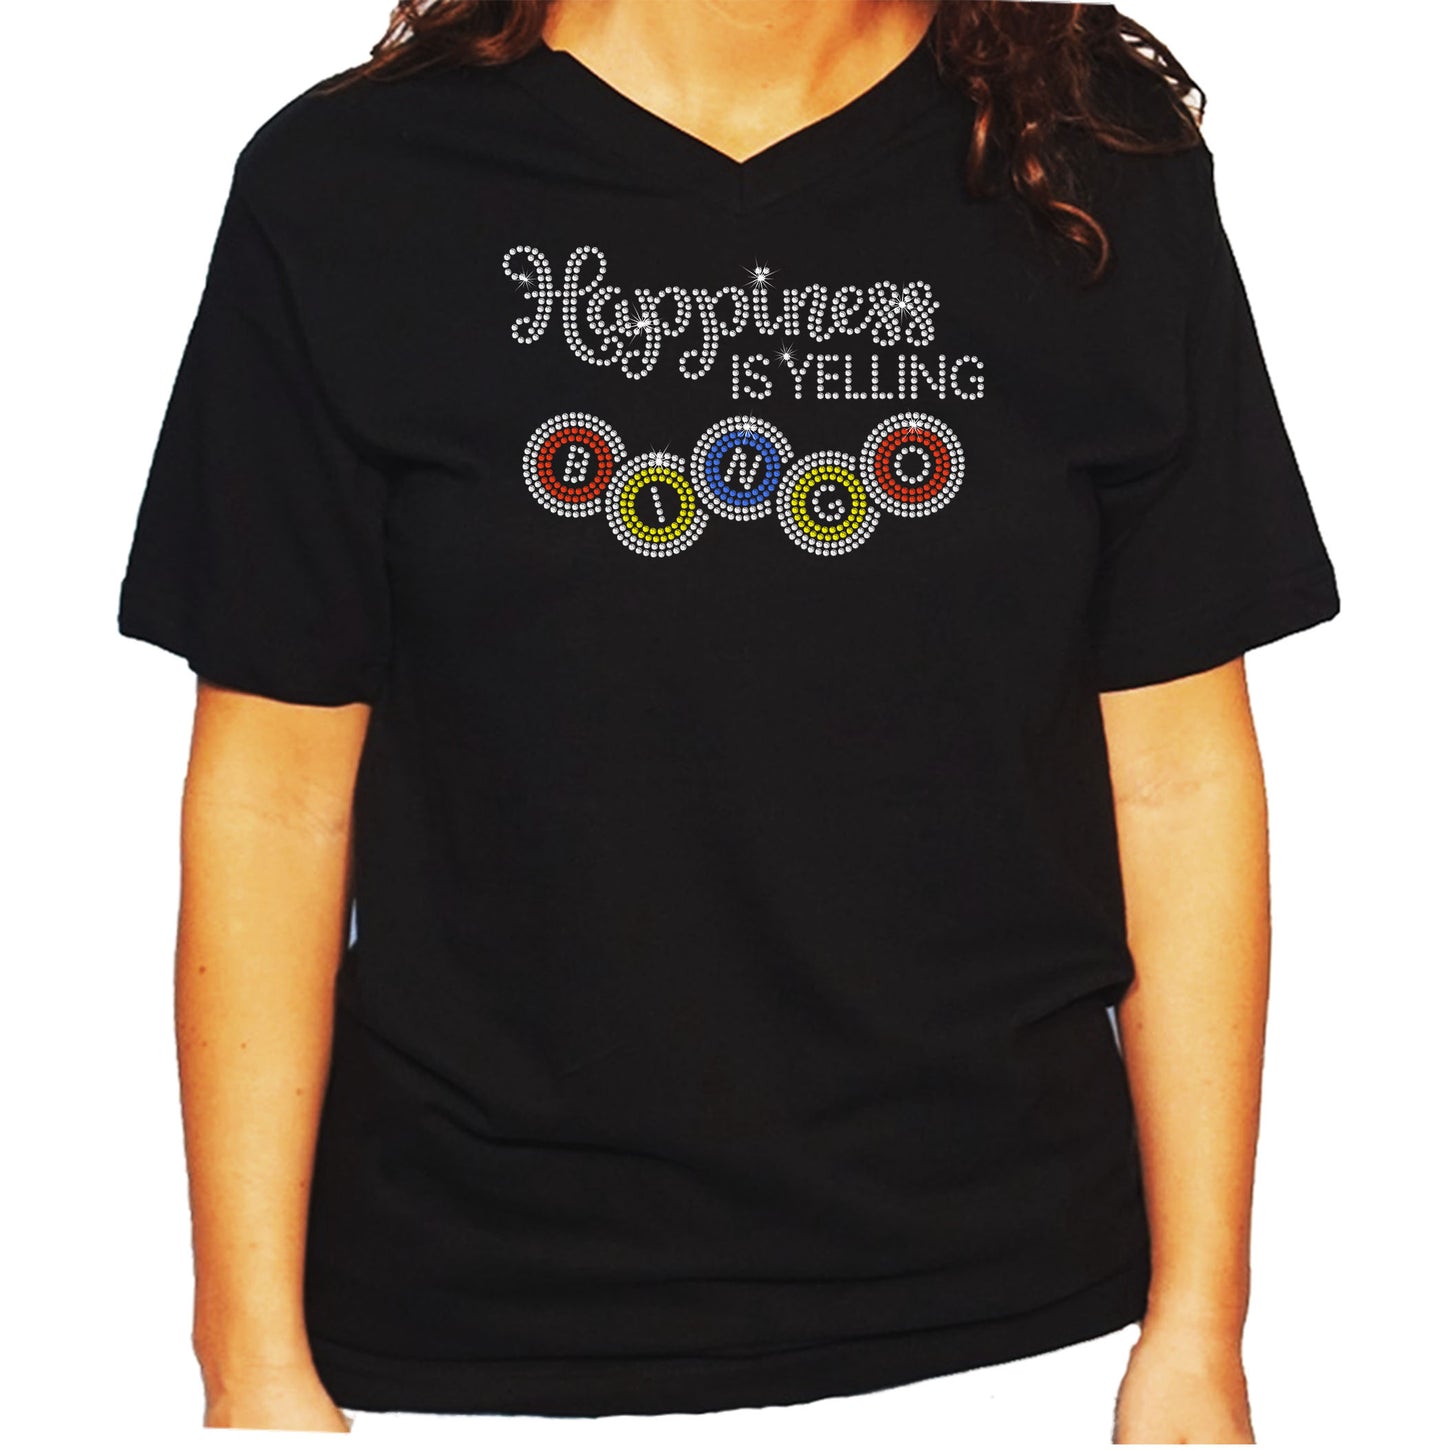 Women's/Unisex Rhinestone T-Shirt with Happiness is Yelling Bingo - Bingo Shirt, Bing Night